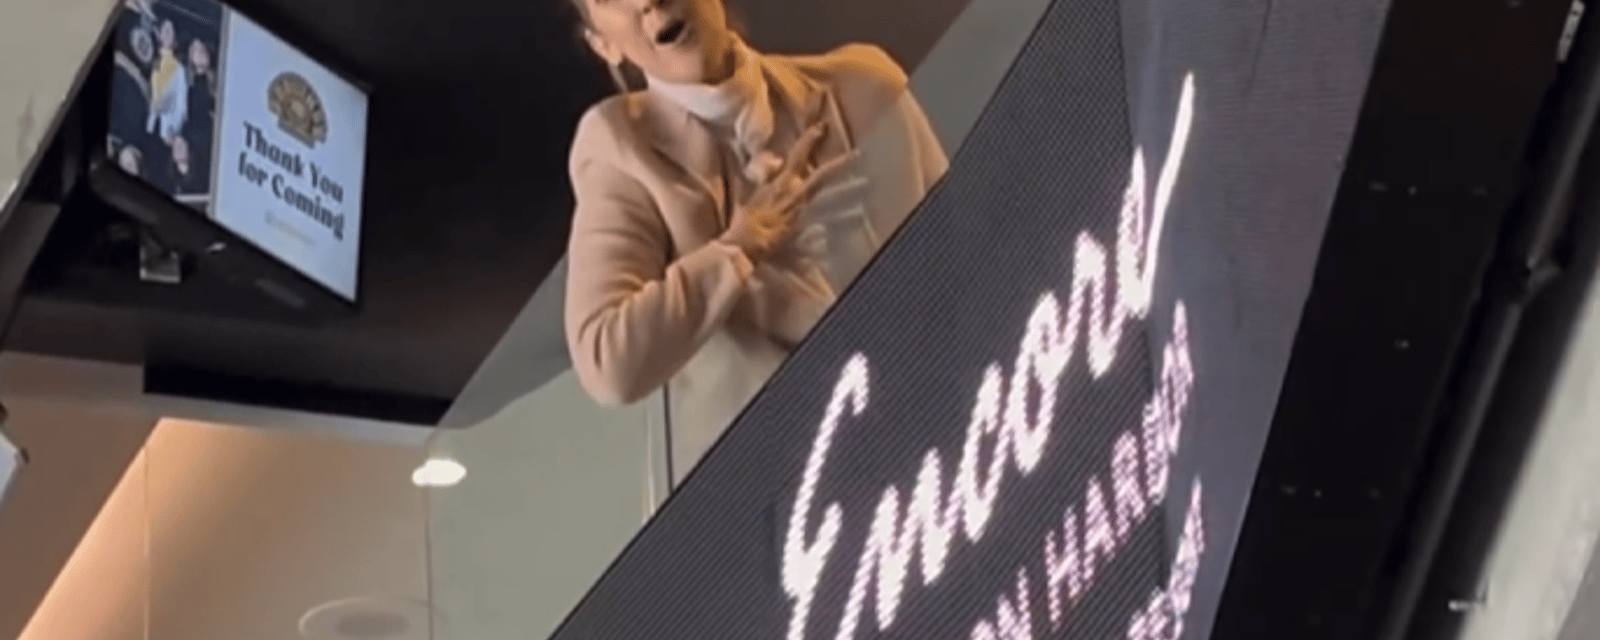 Une nouvelle vidéo de Céline Dion fait surface alors qu'on la voit chanter avec des fans en public